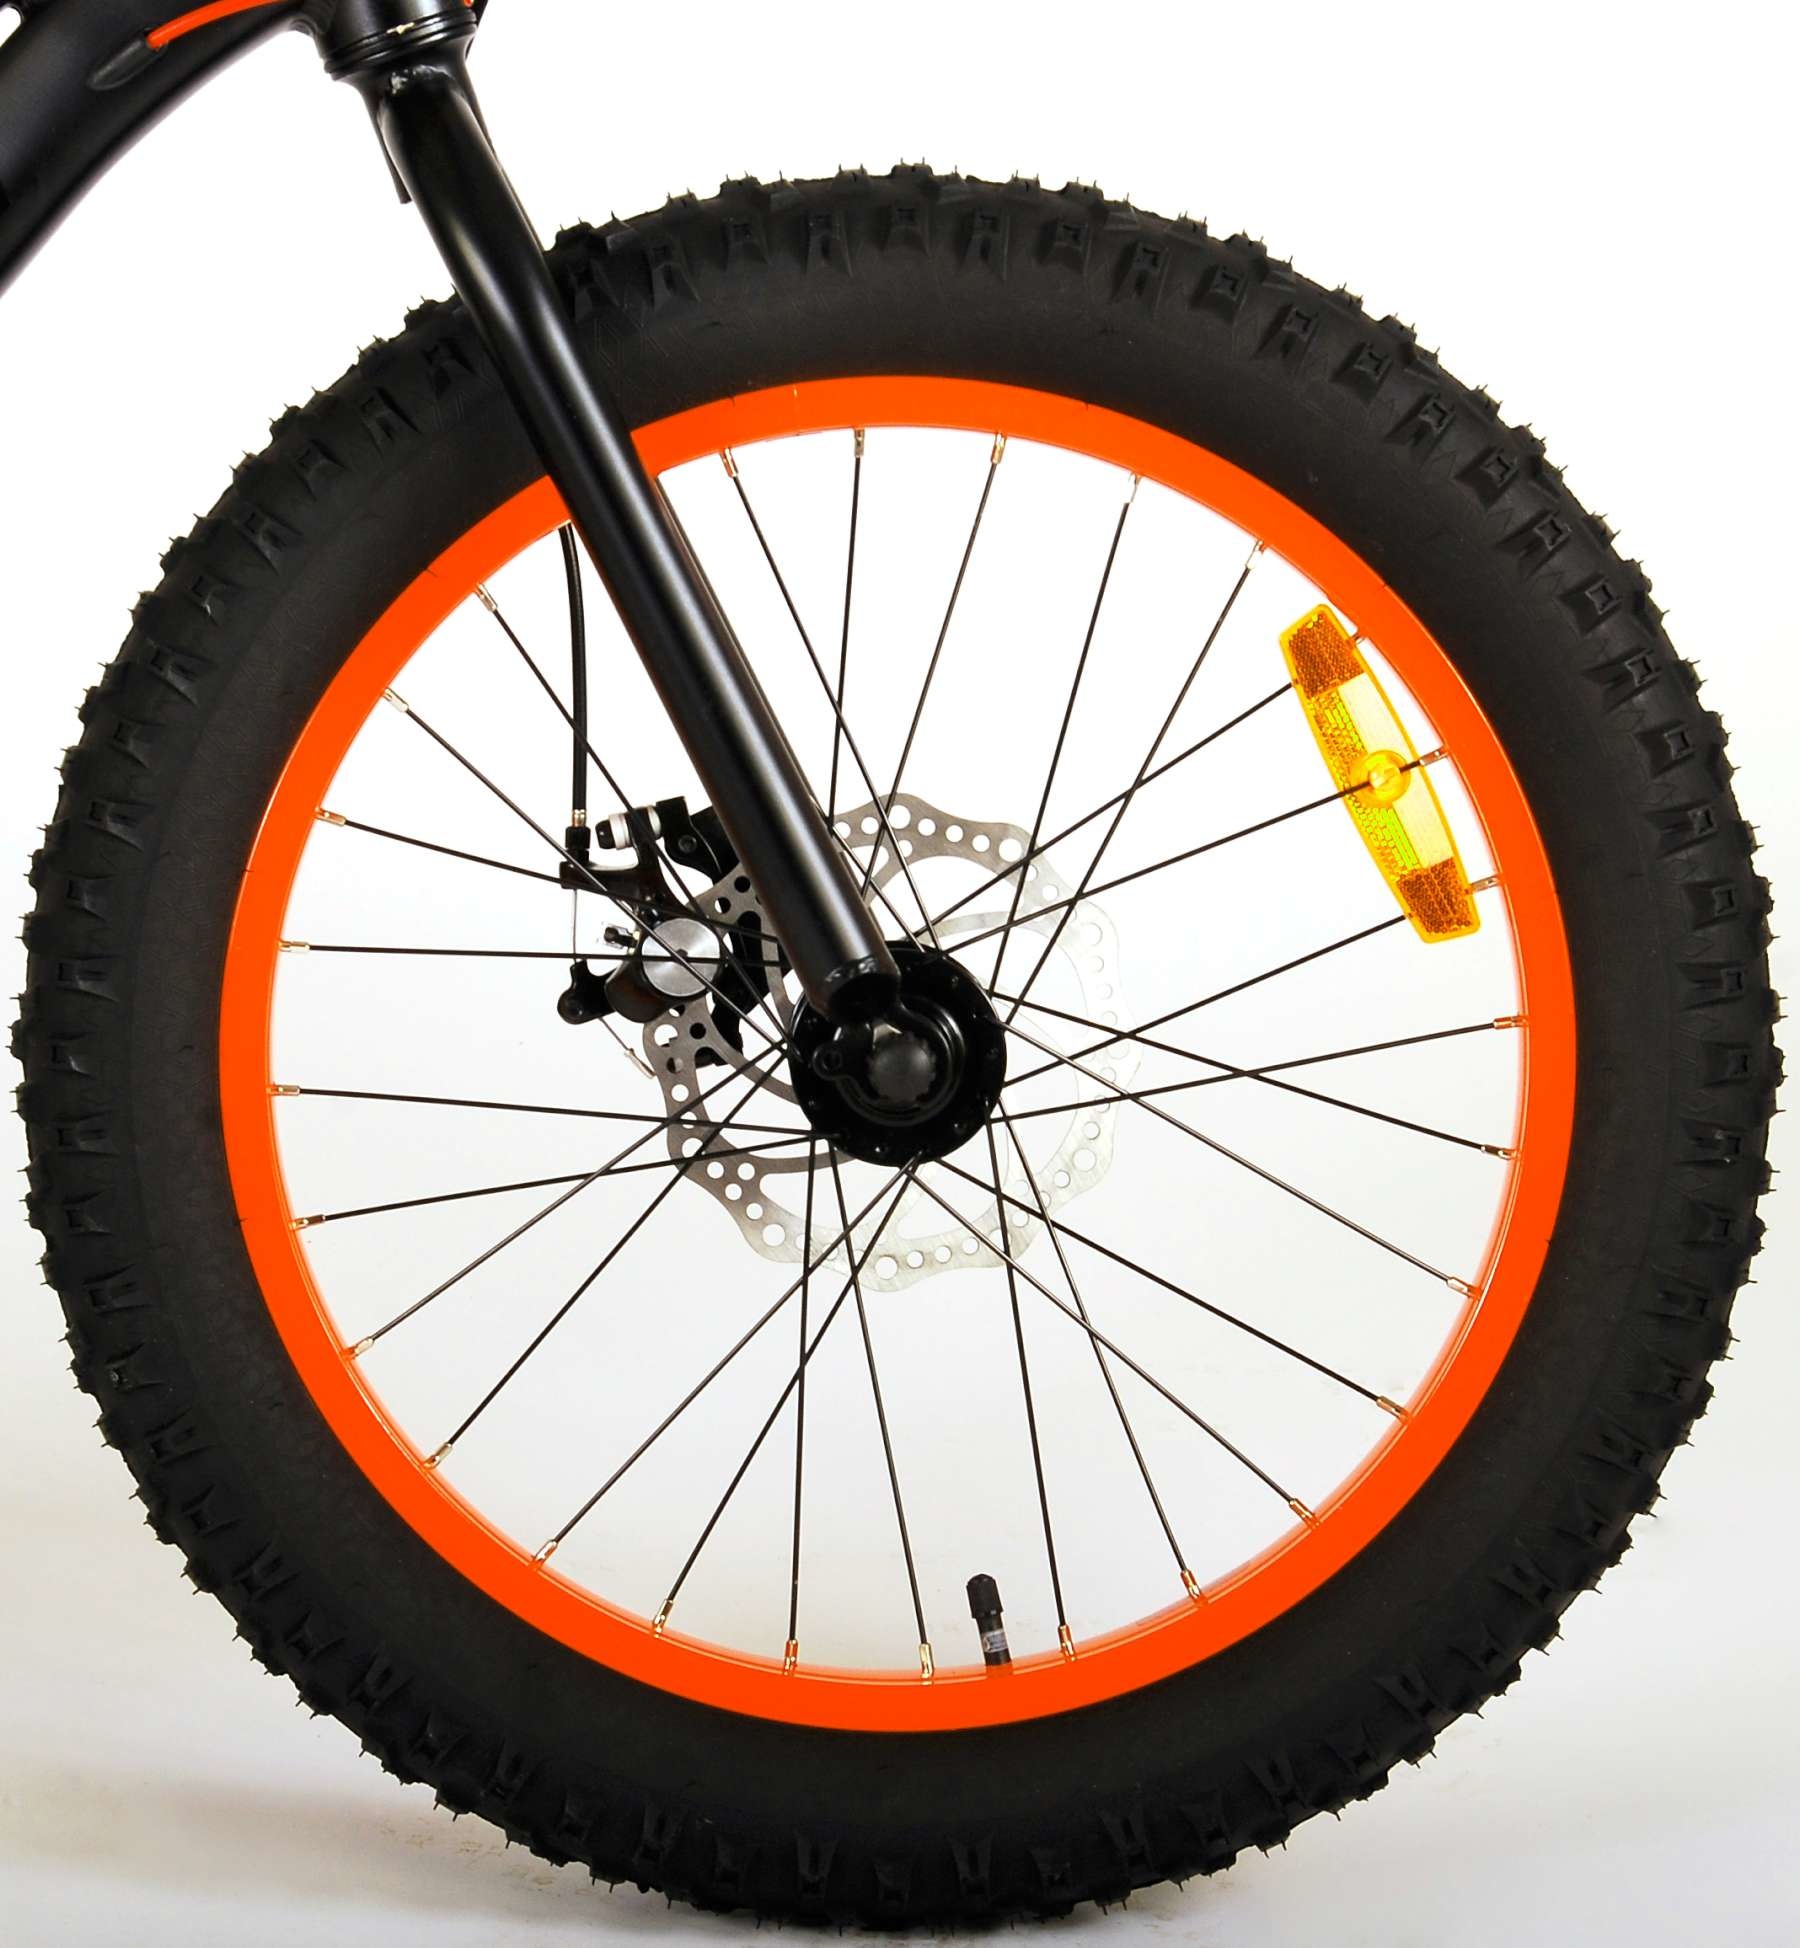 Ster Zwitsers Zuinig Volare Gradient Fatbike 20 inch Zwart/Rood/Oranje 6v - Fietsen4all.nl